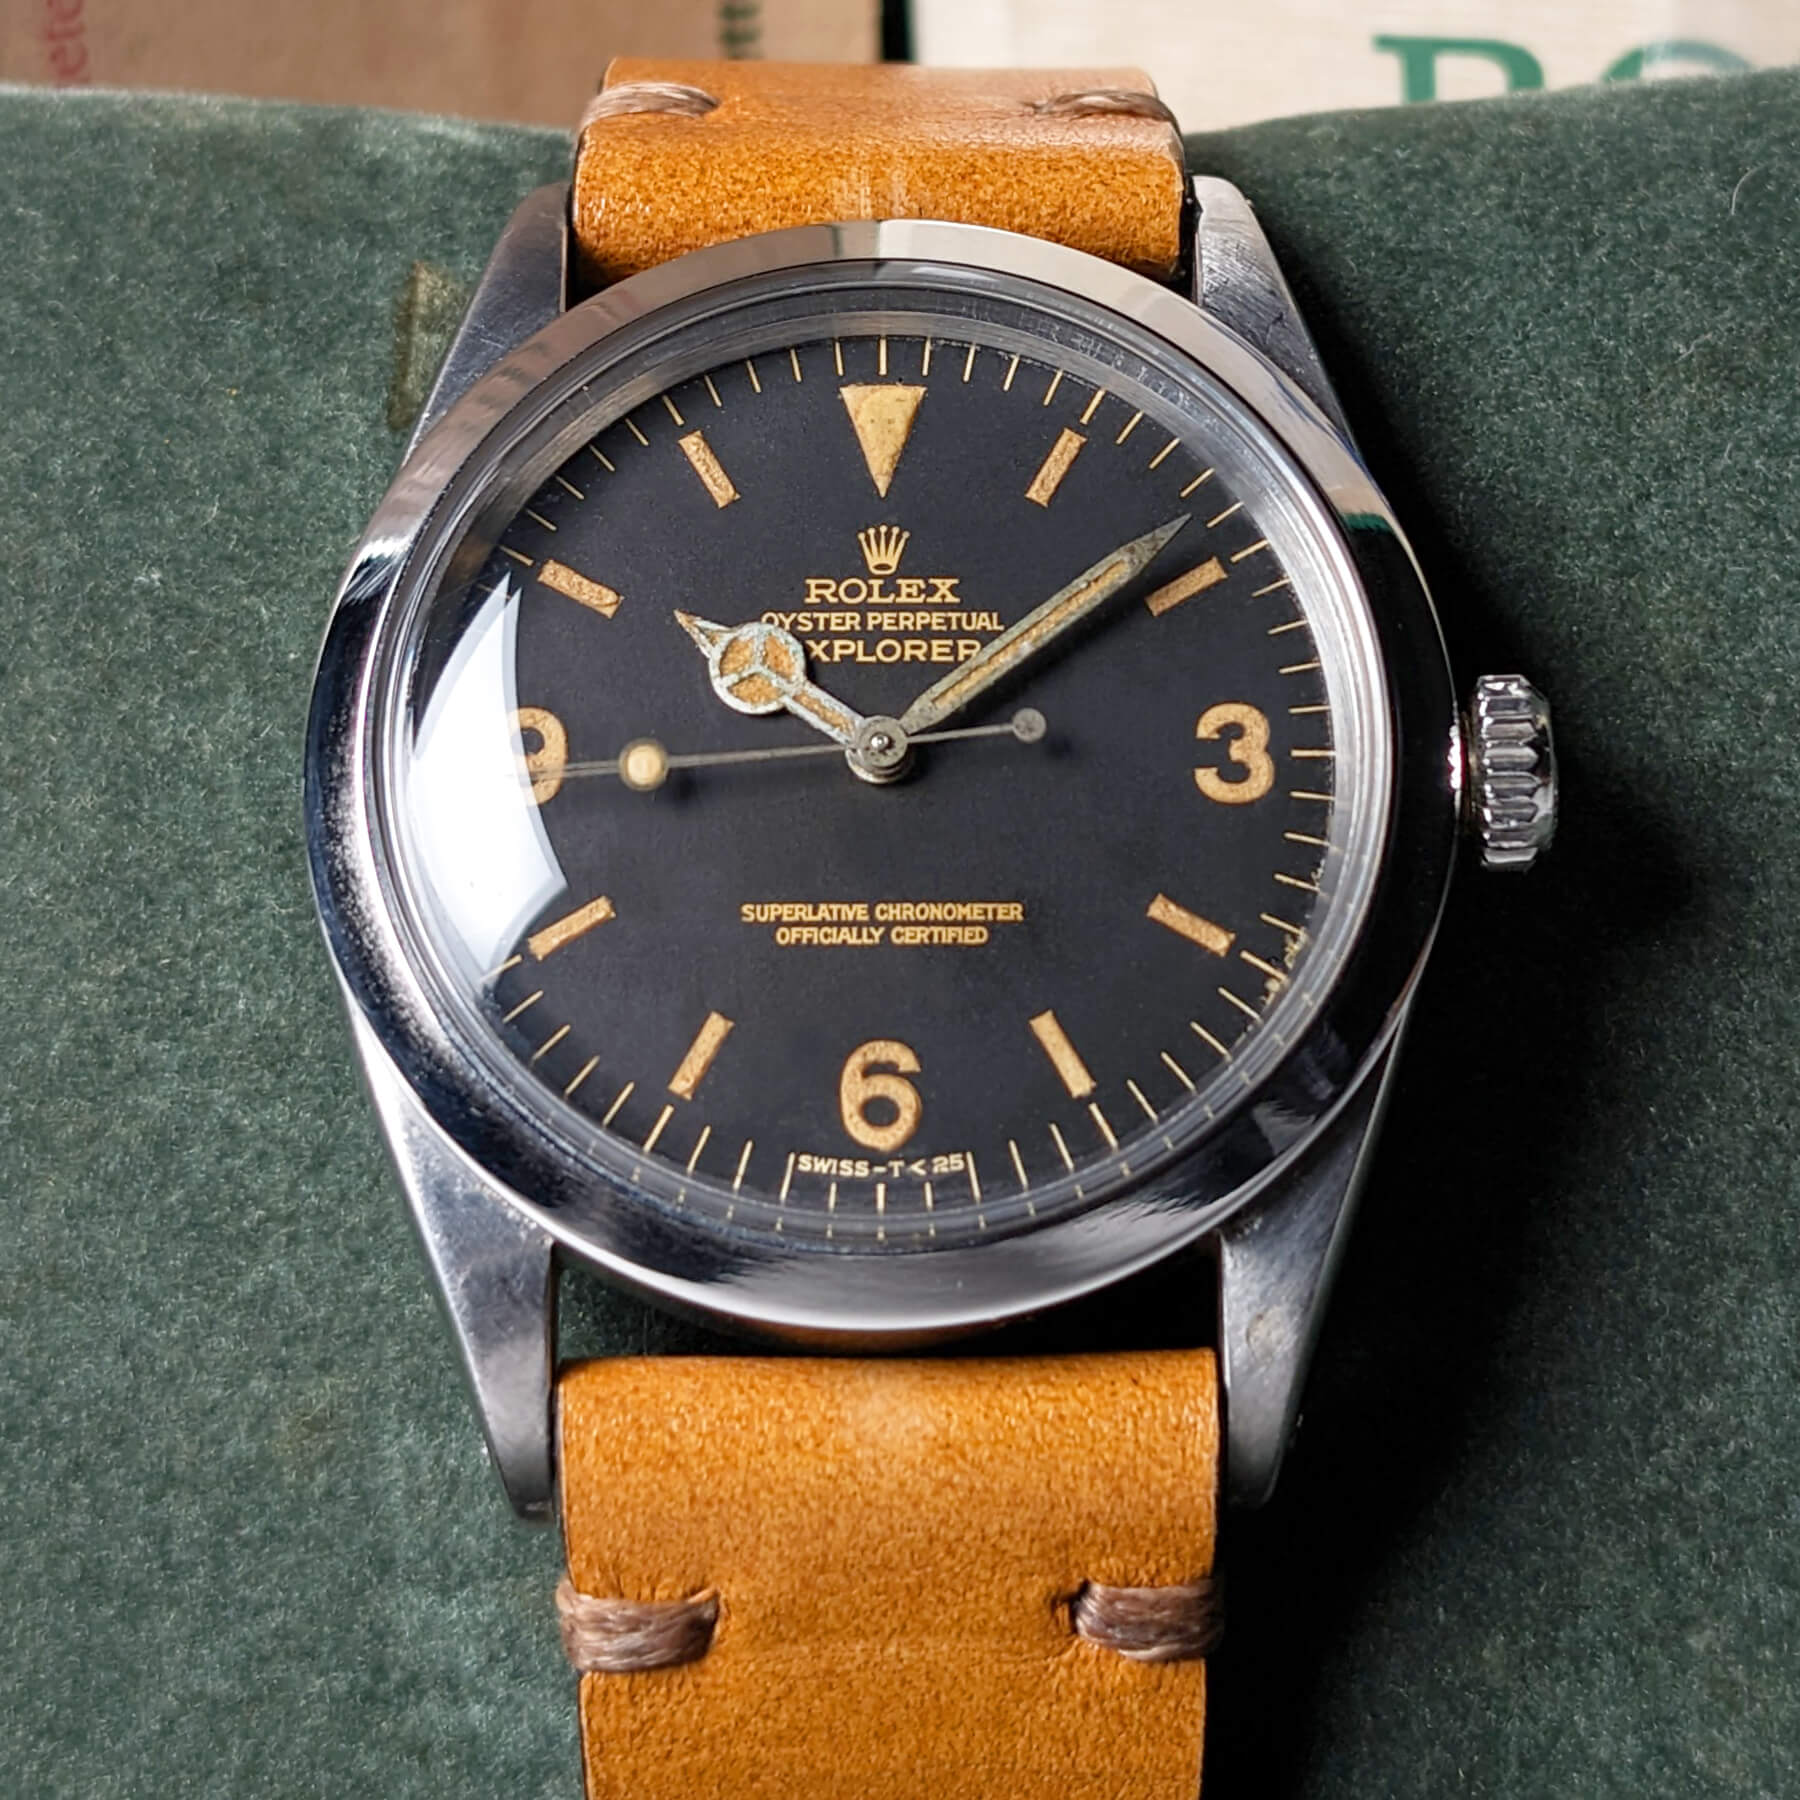 Vintage Rolex 1016 Explorer For Sale | Bob's Watches